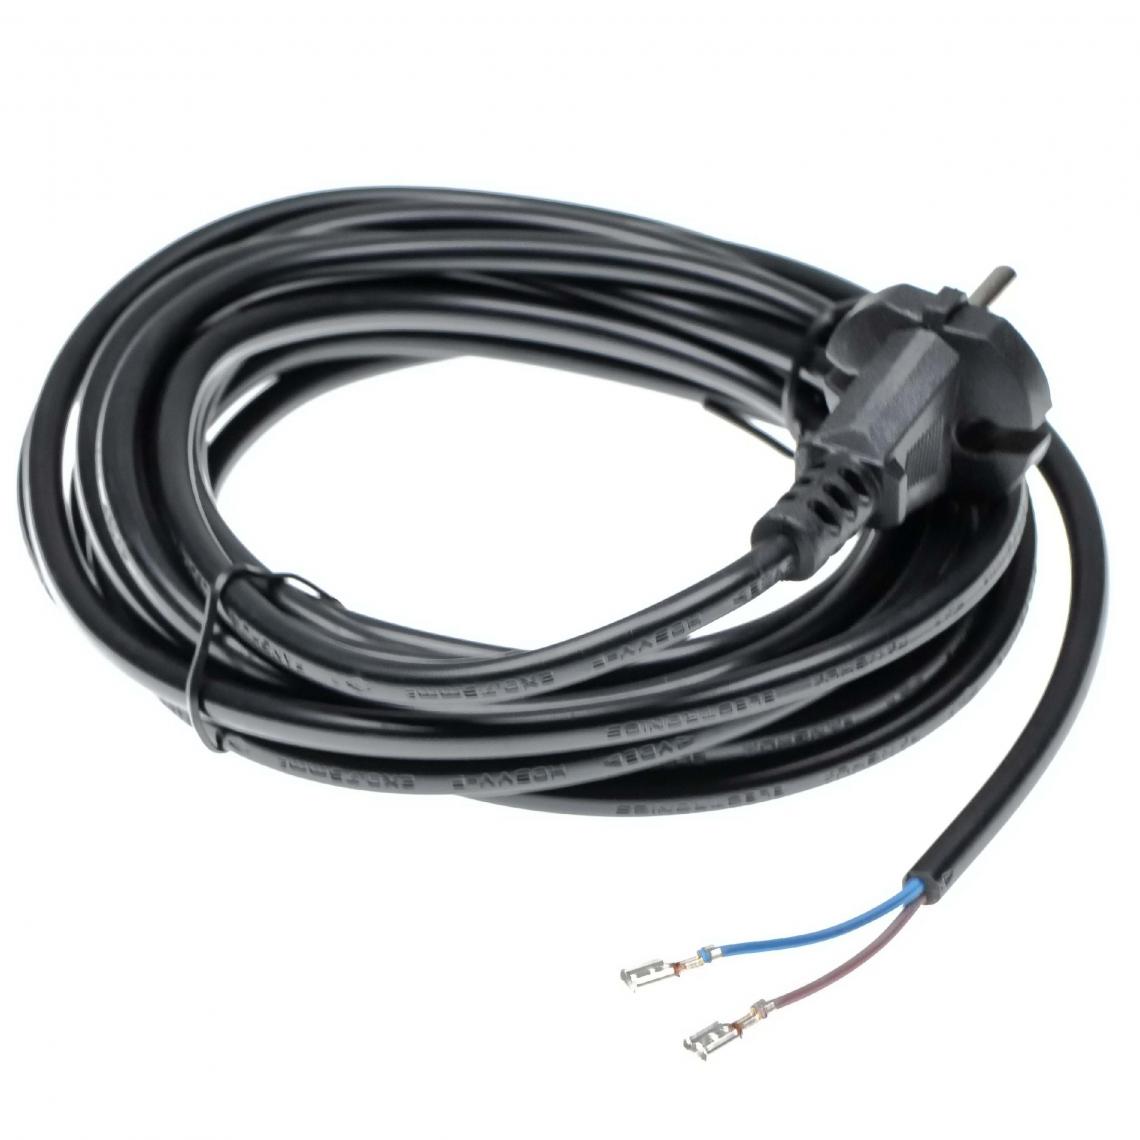 Vhbw - vhbw Câble électrique compatible avec Miele S4210, S4211, S444I, S5210, S5211, S5220 aspirateurs - 6 m, 4000 W - Accessoire entretien des sols